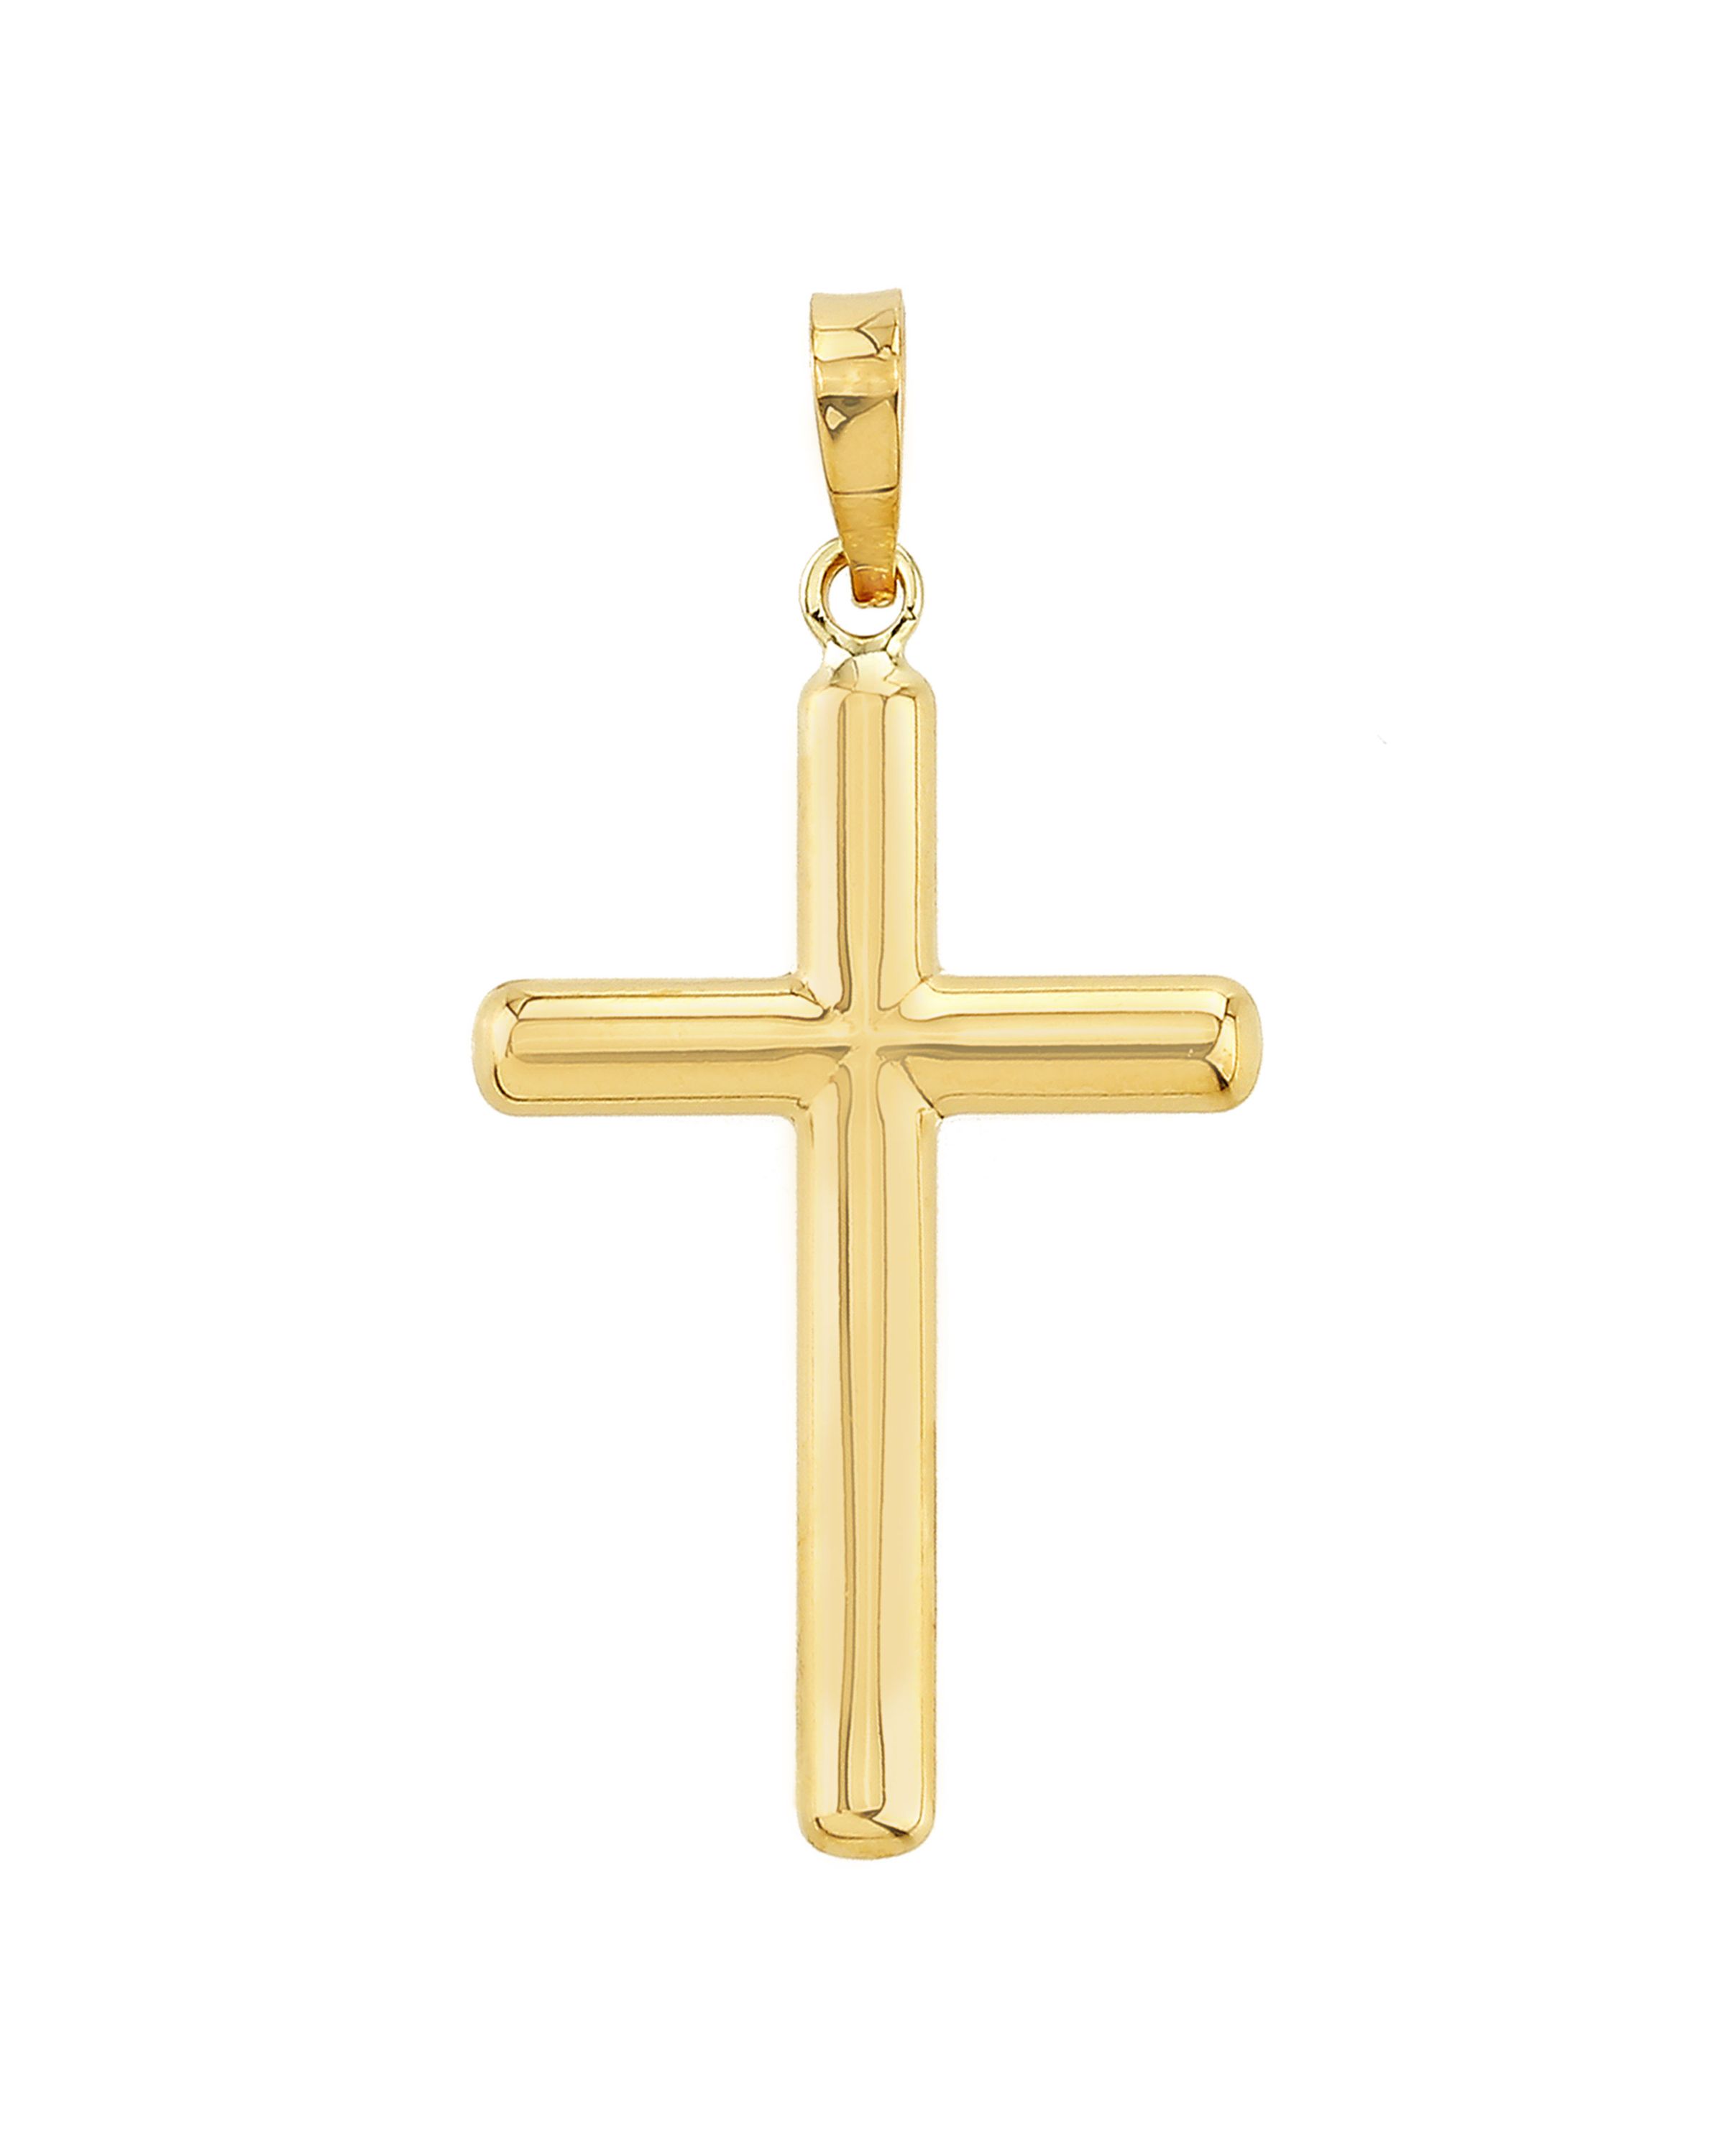 Goldanhänger Kreuz in 375 Gelbgold 8135